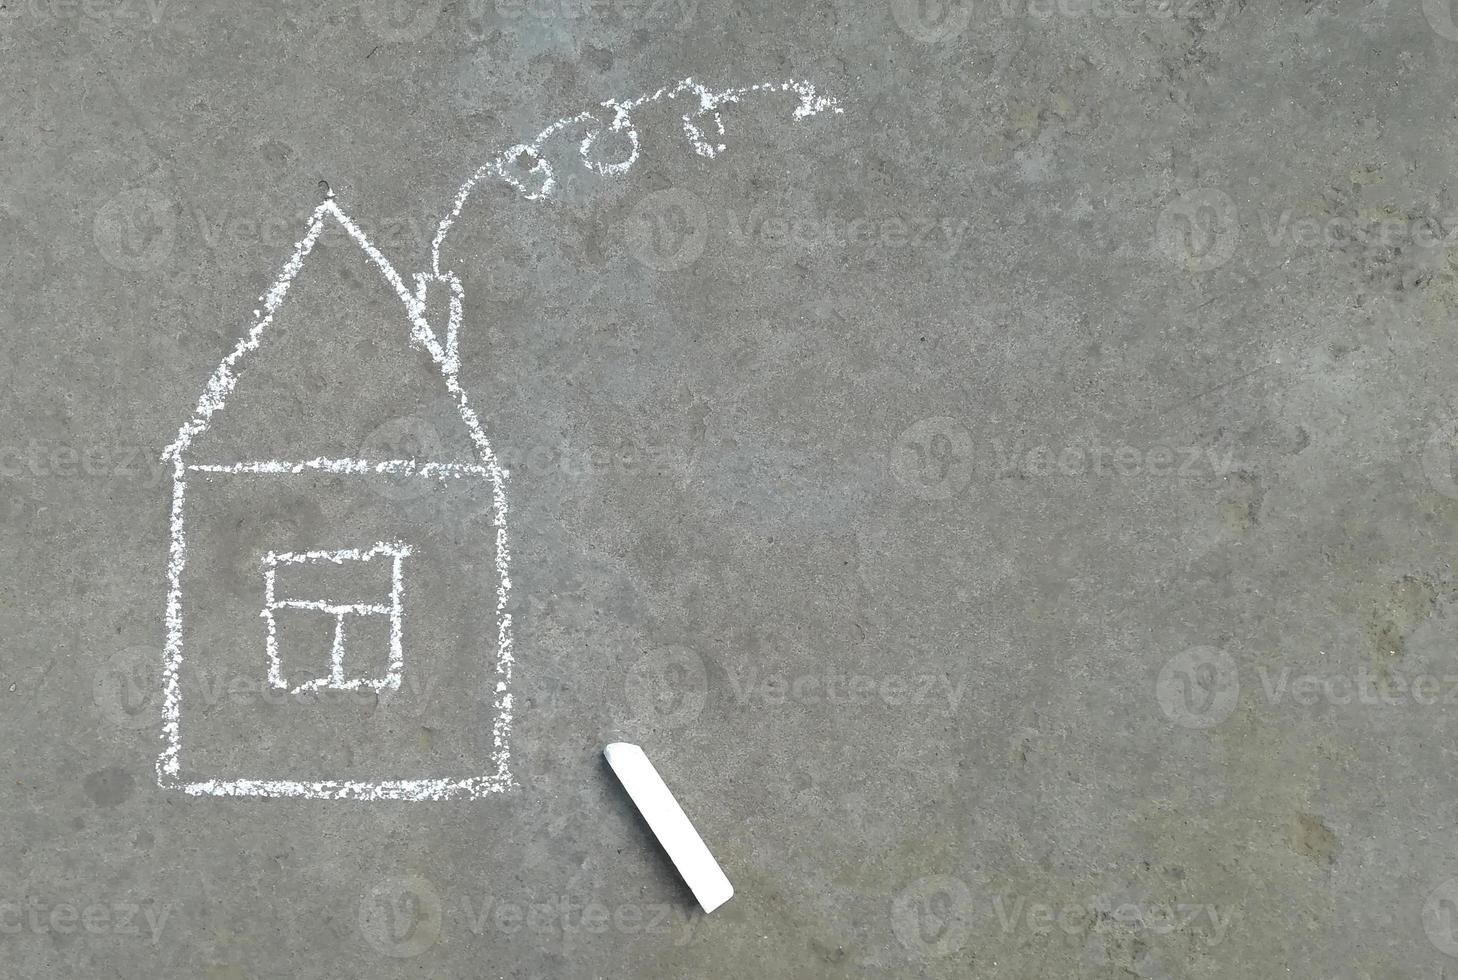 huis is getekend met krijt op het asfalt. kinderen creativiteit, zomer, huisvesting, familie, hypotheek, huur. banner met plaats voor tekst, kopieer ruimte, thuis foto